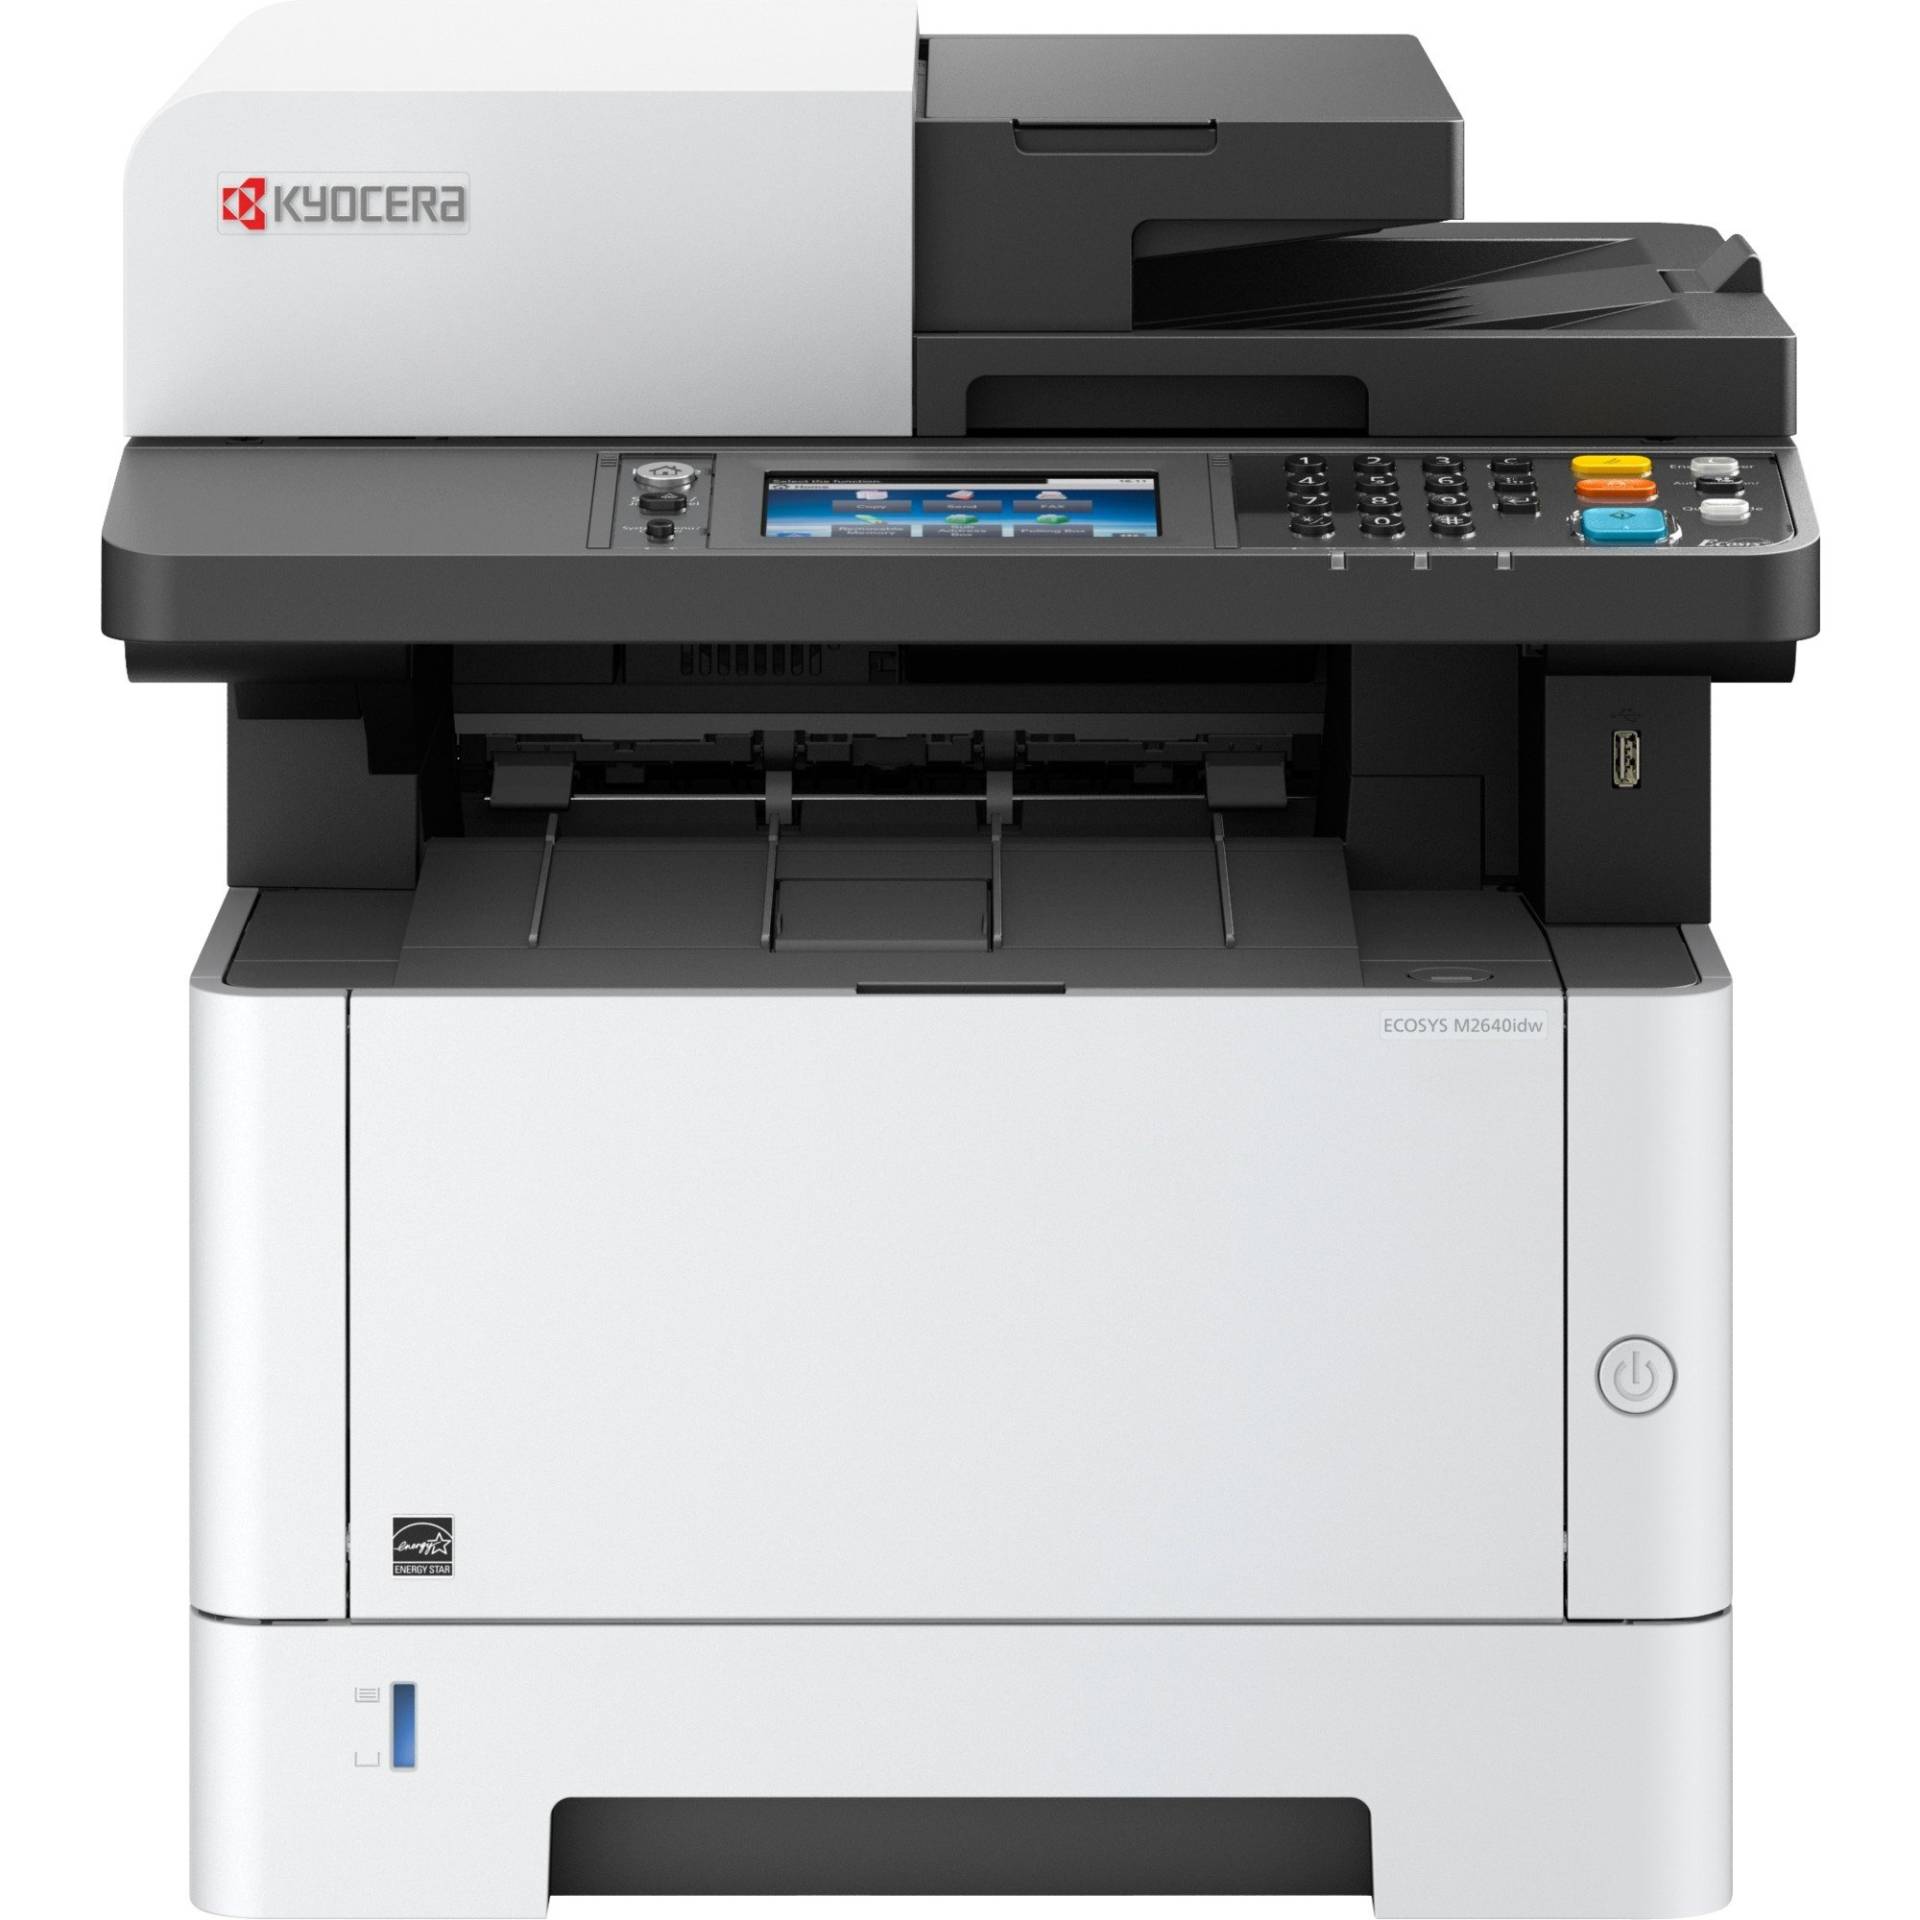 ECOSYS M2640idw, Multifunktionsdrucker von Kyocera